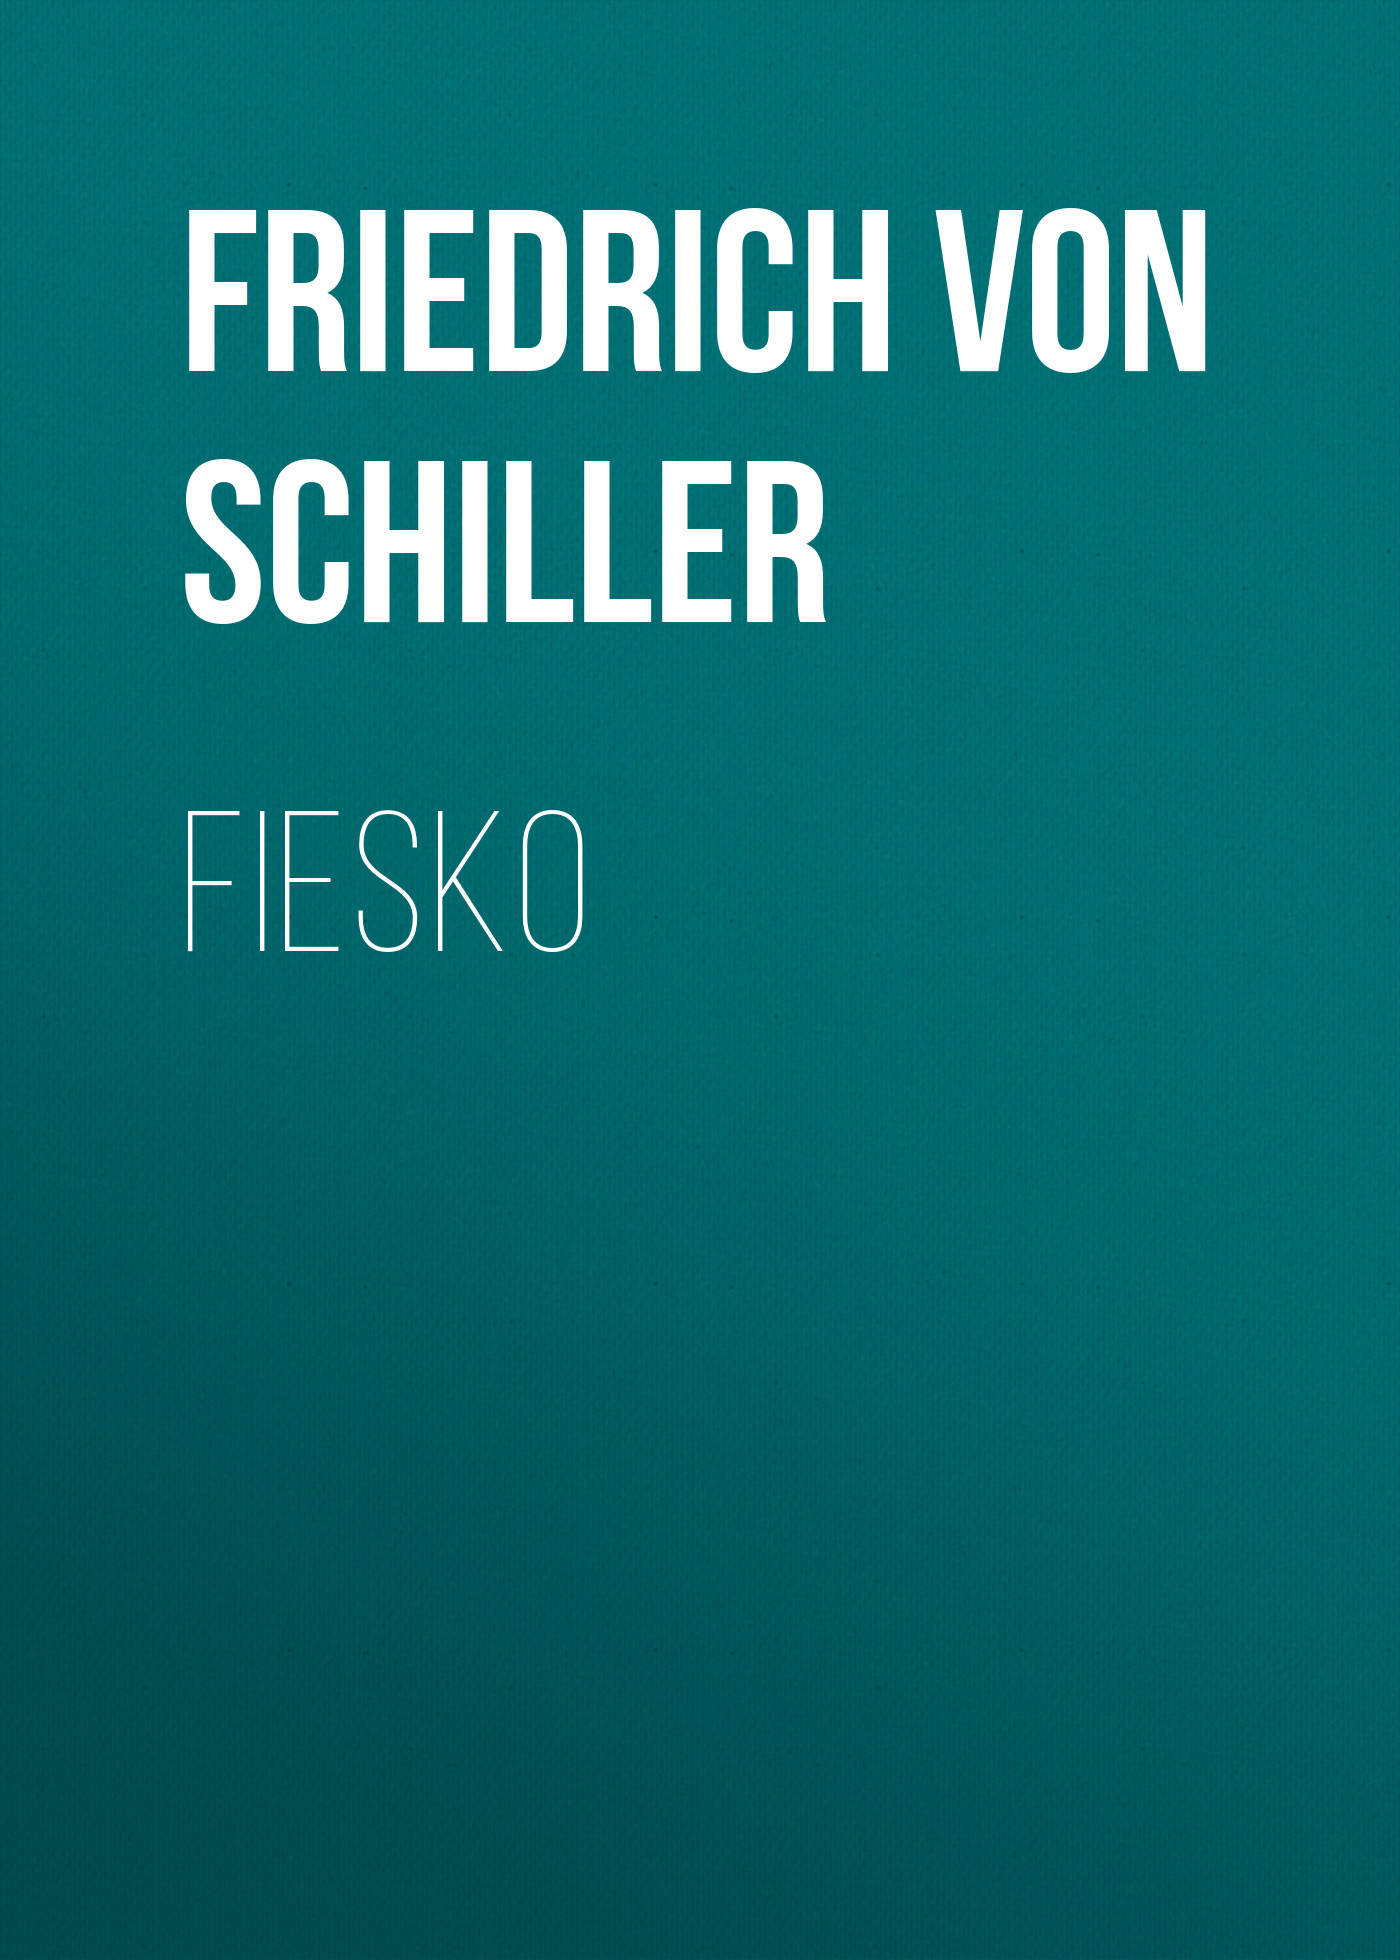 Книга Fiesko из серии , созданная Friedrich Schiller, может относится к жанру Литература 18 века, Зарубежная старинная литература, Зарубежная классика. Стоимость электронной книги Fiesko с идентификатором 25449924 составляет 0 руб.